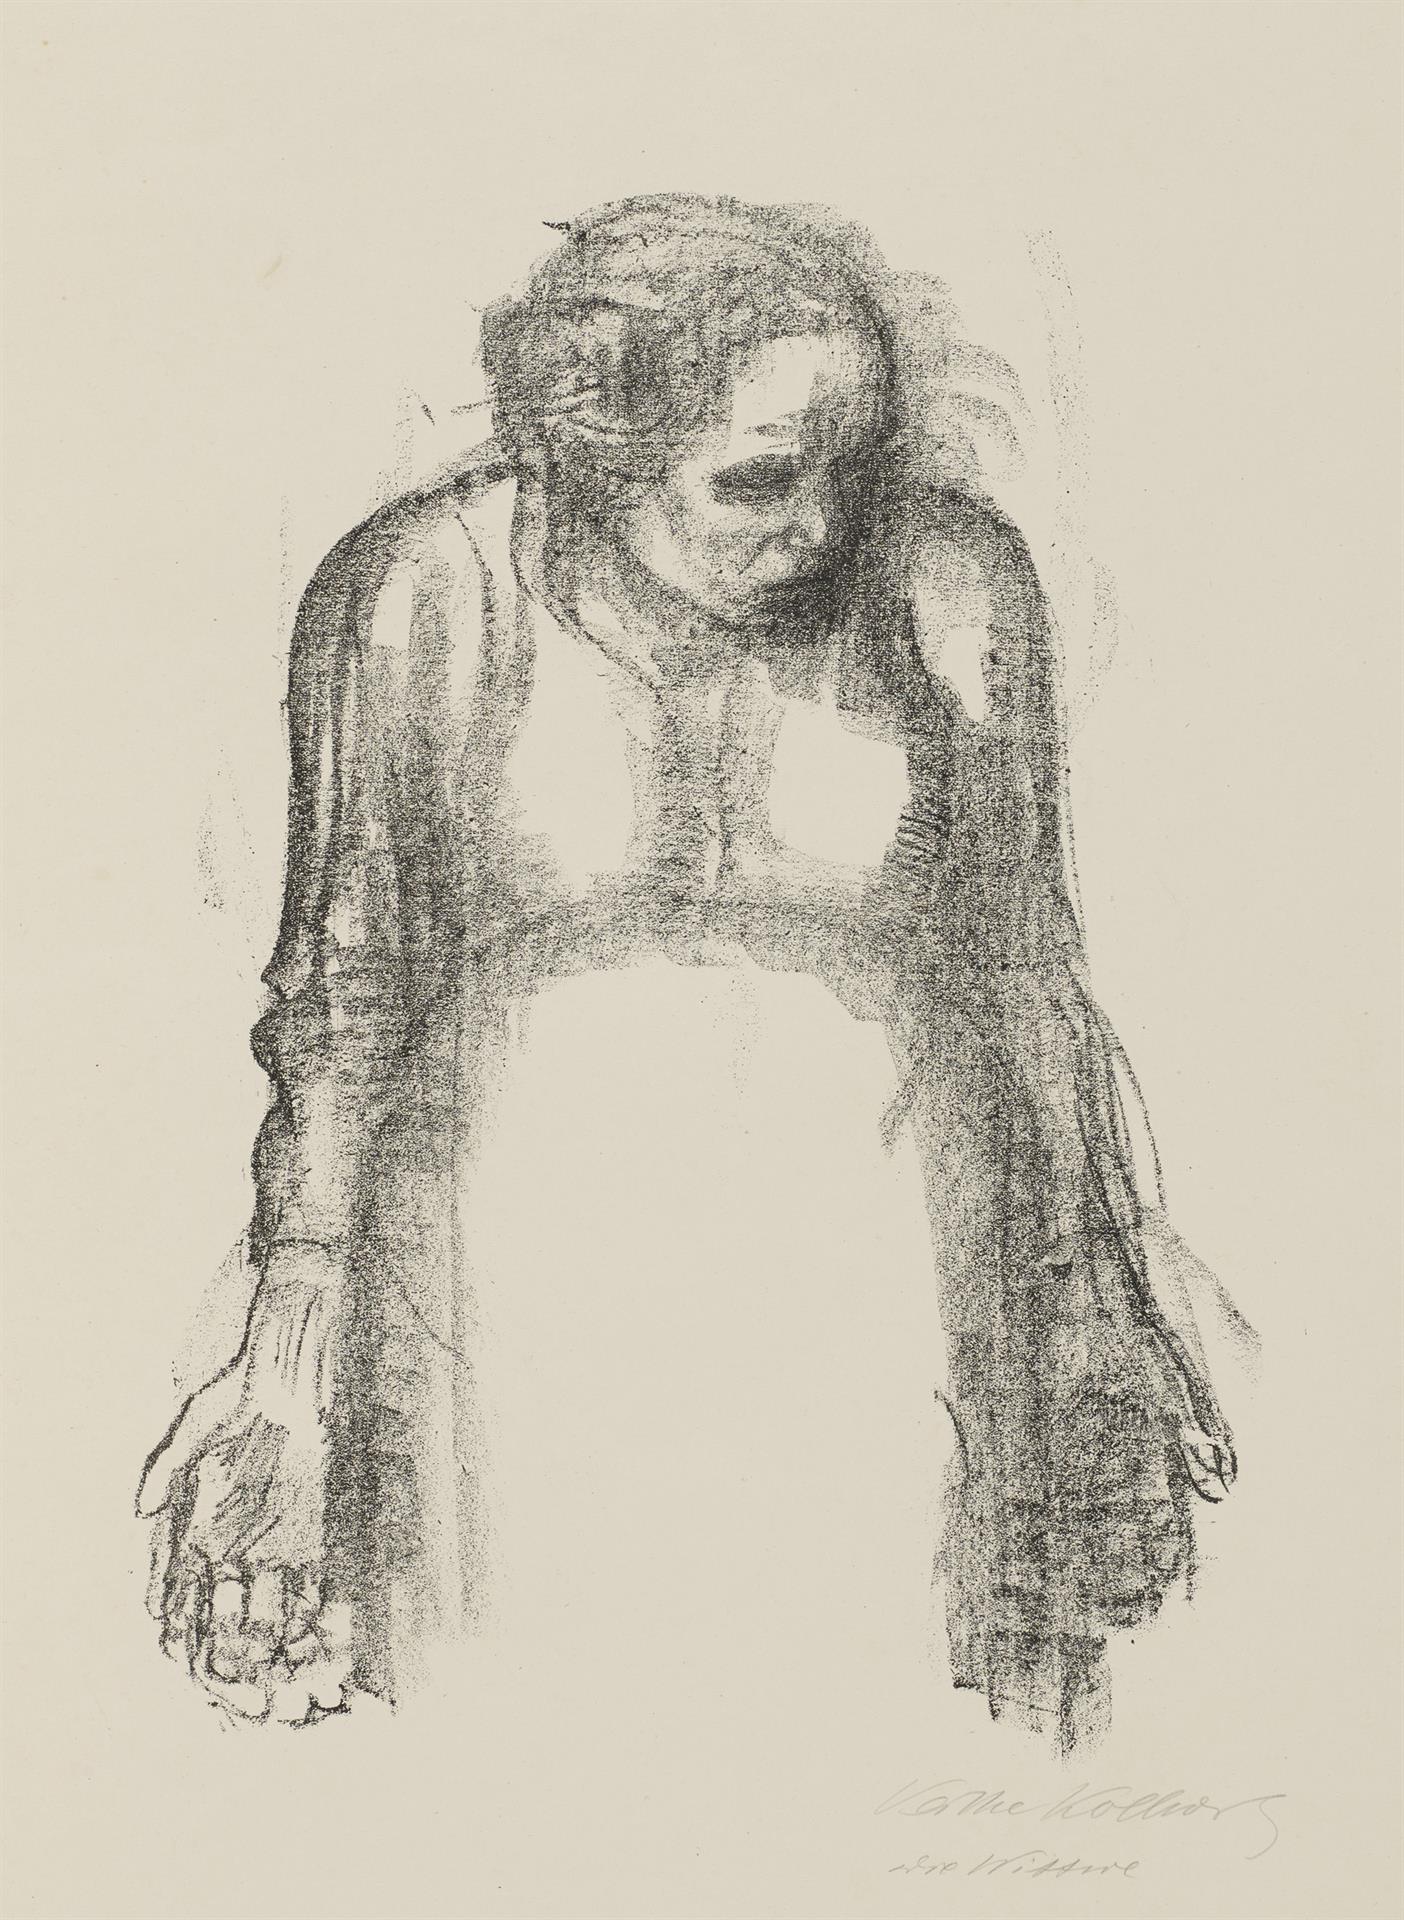 Käthe Kollwitz, Die Witwe I, verworfene dritte Fassung von Blatt 4 der Folge »Krieg«, 1920, Kreidelithographie, Kn 152 c